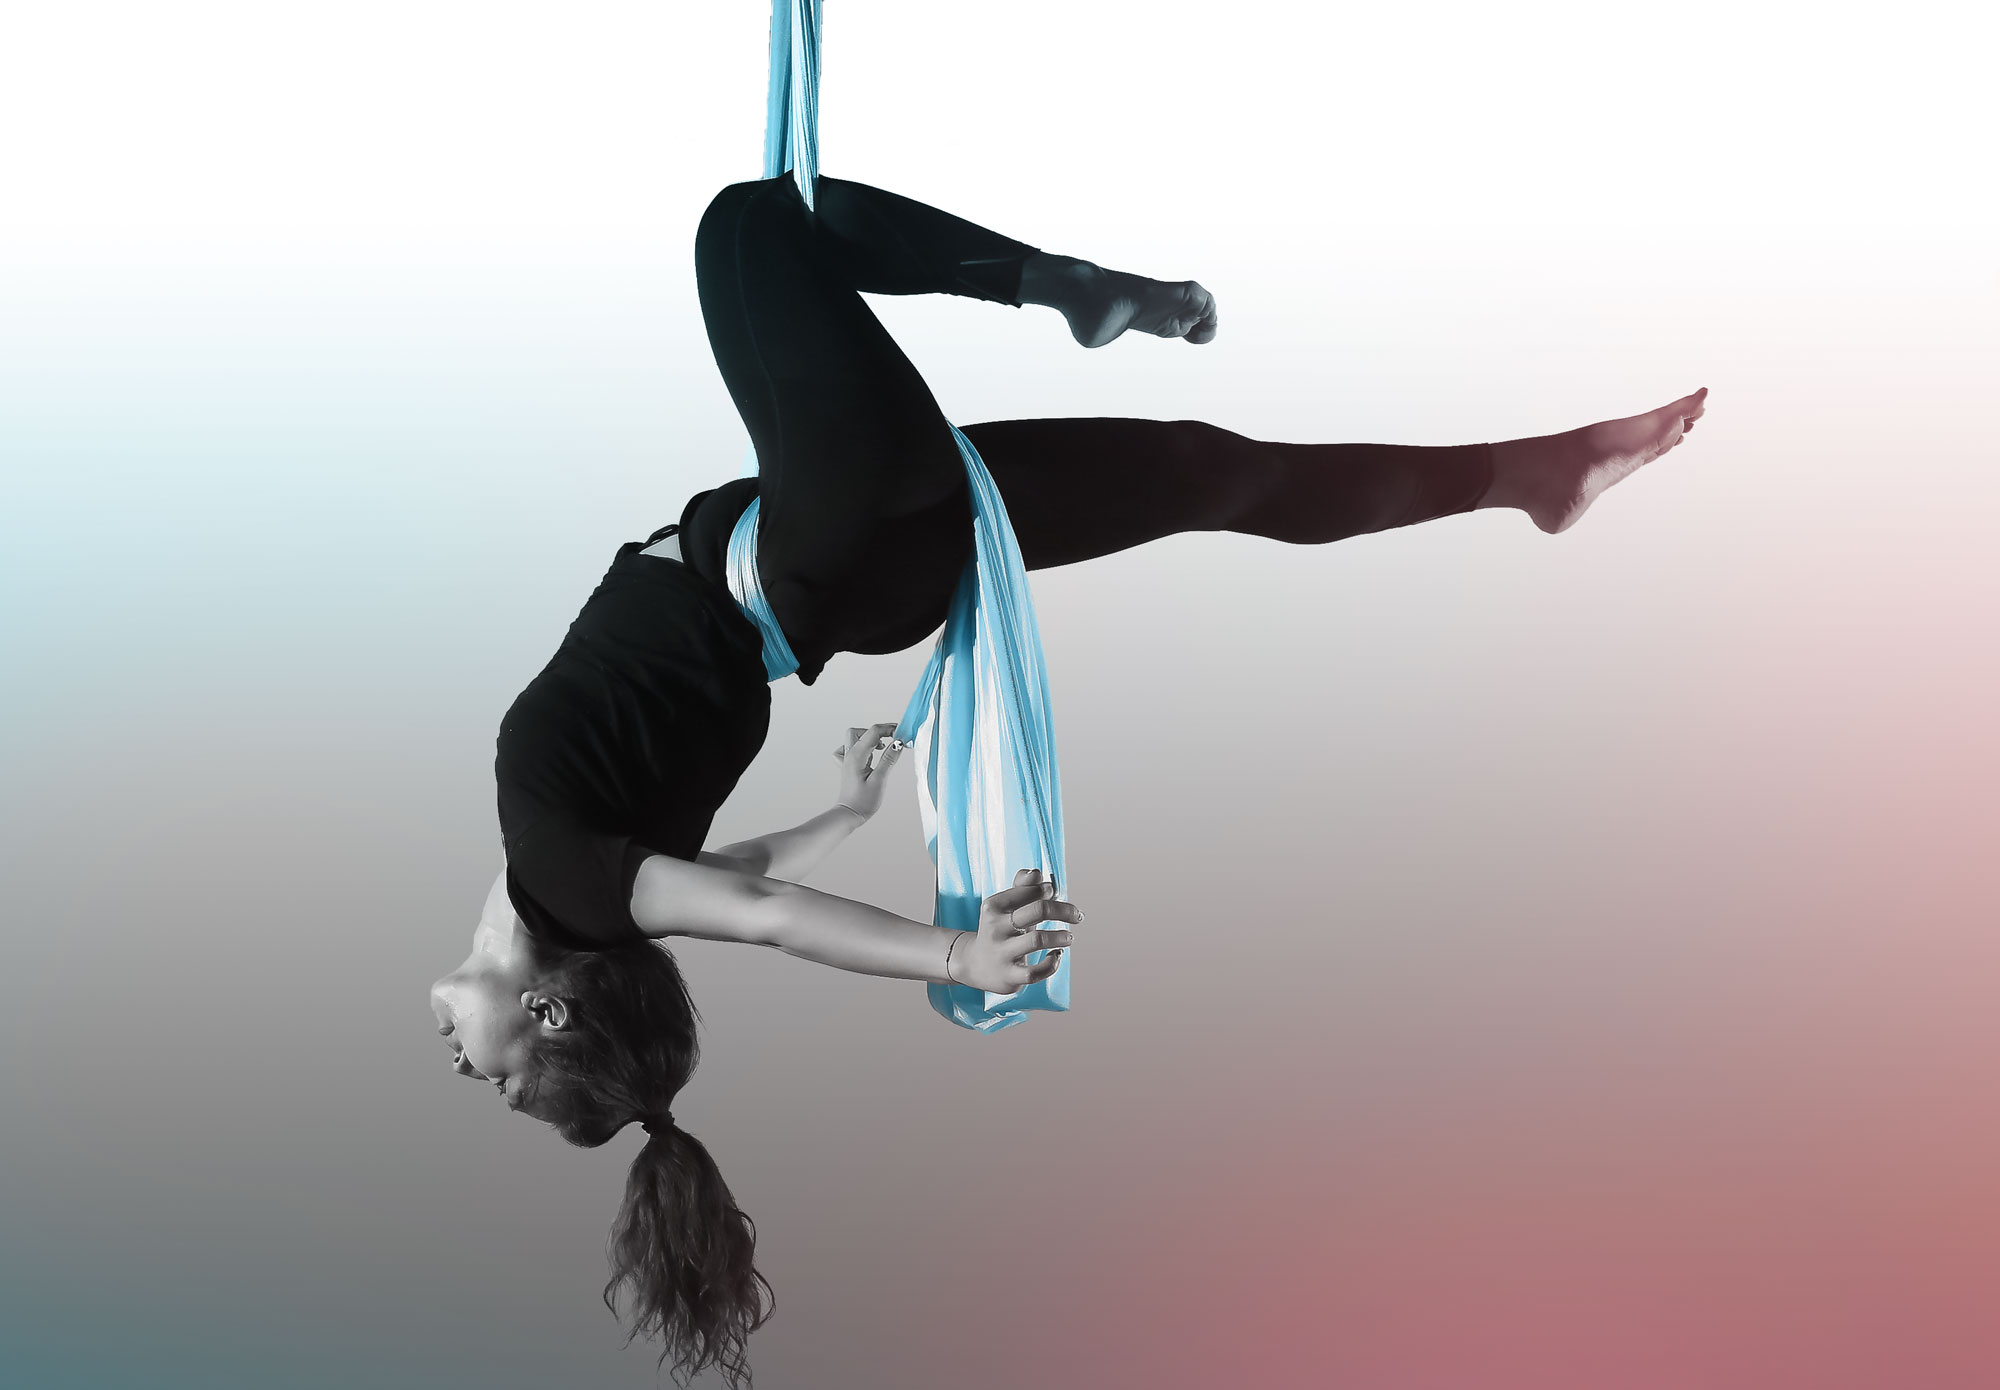 Dance trapeze flow [Video]  Aerial dance, Aerial hoop, Aerial arts